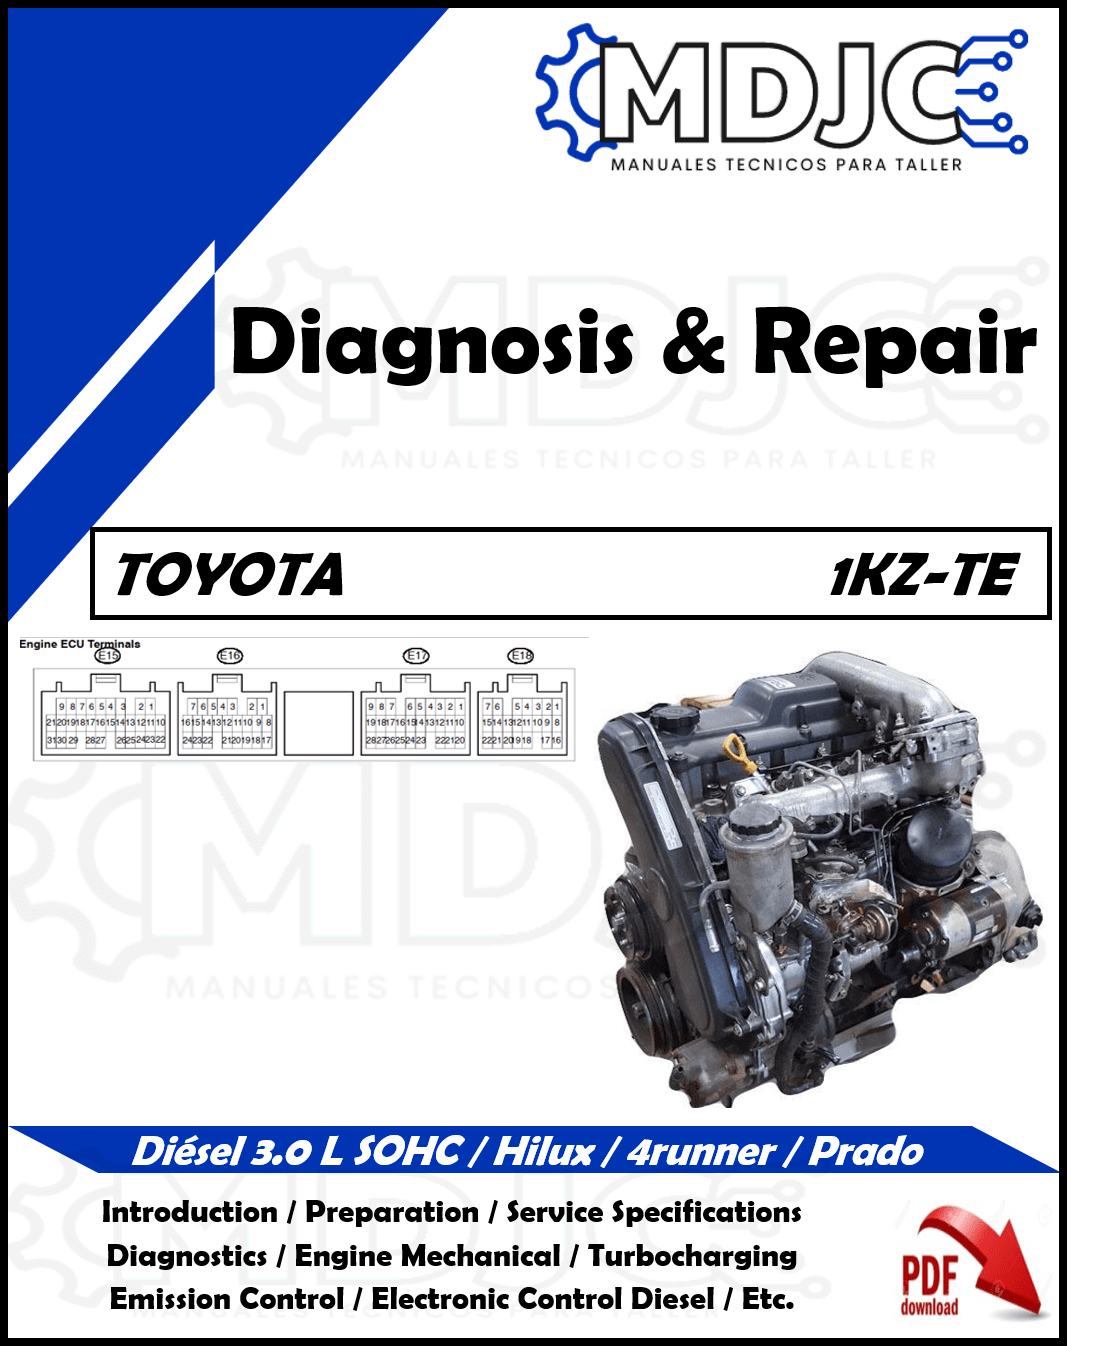 Manual de Taller (Diagnóstico y Reparación) Motor Toyota 1KZ-TE (3.0 L) Diesel